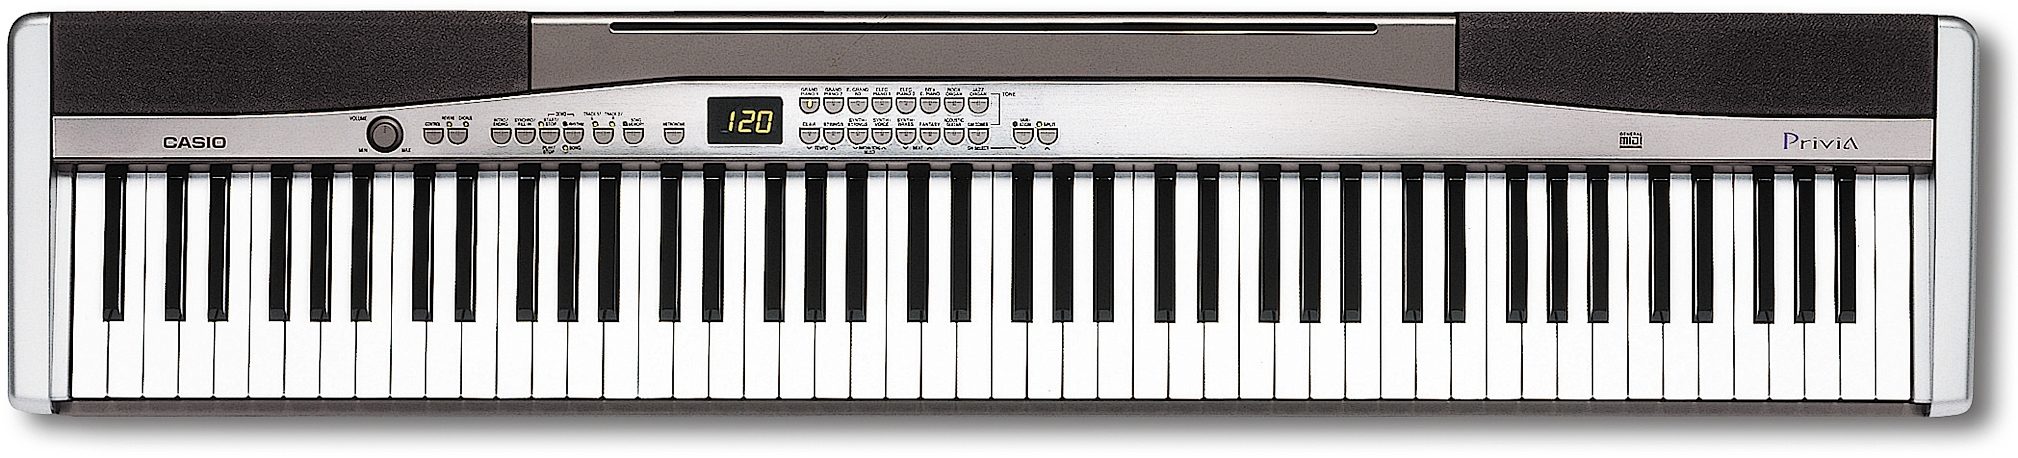 一部難あり】CASIO PX-300 - 鍵盤楽器